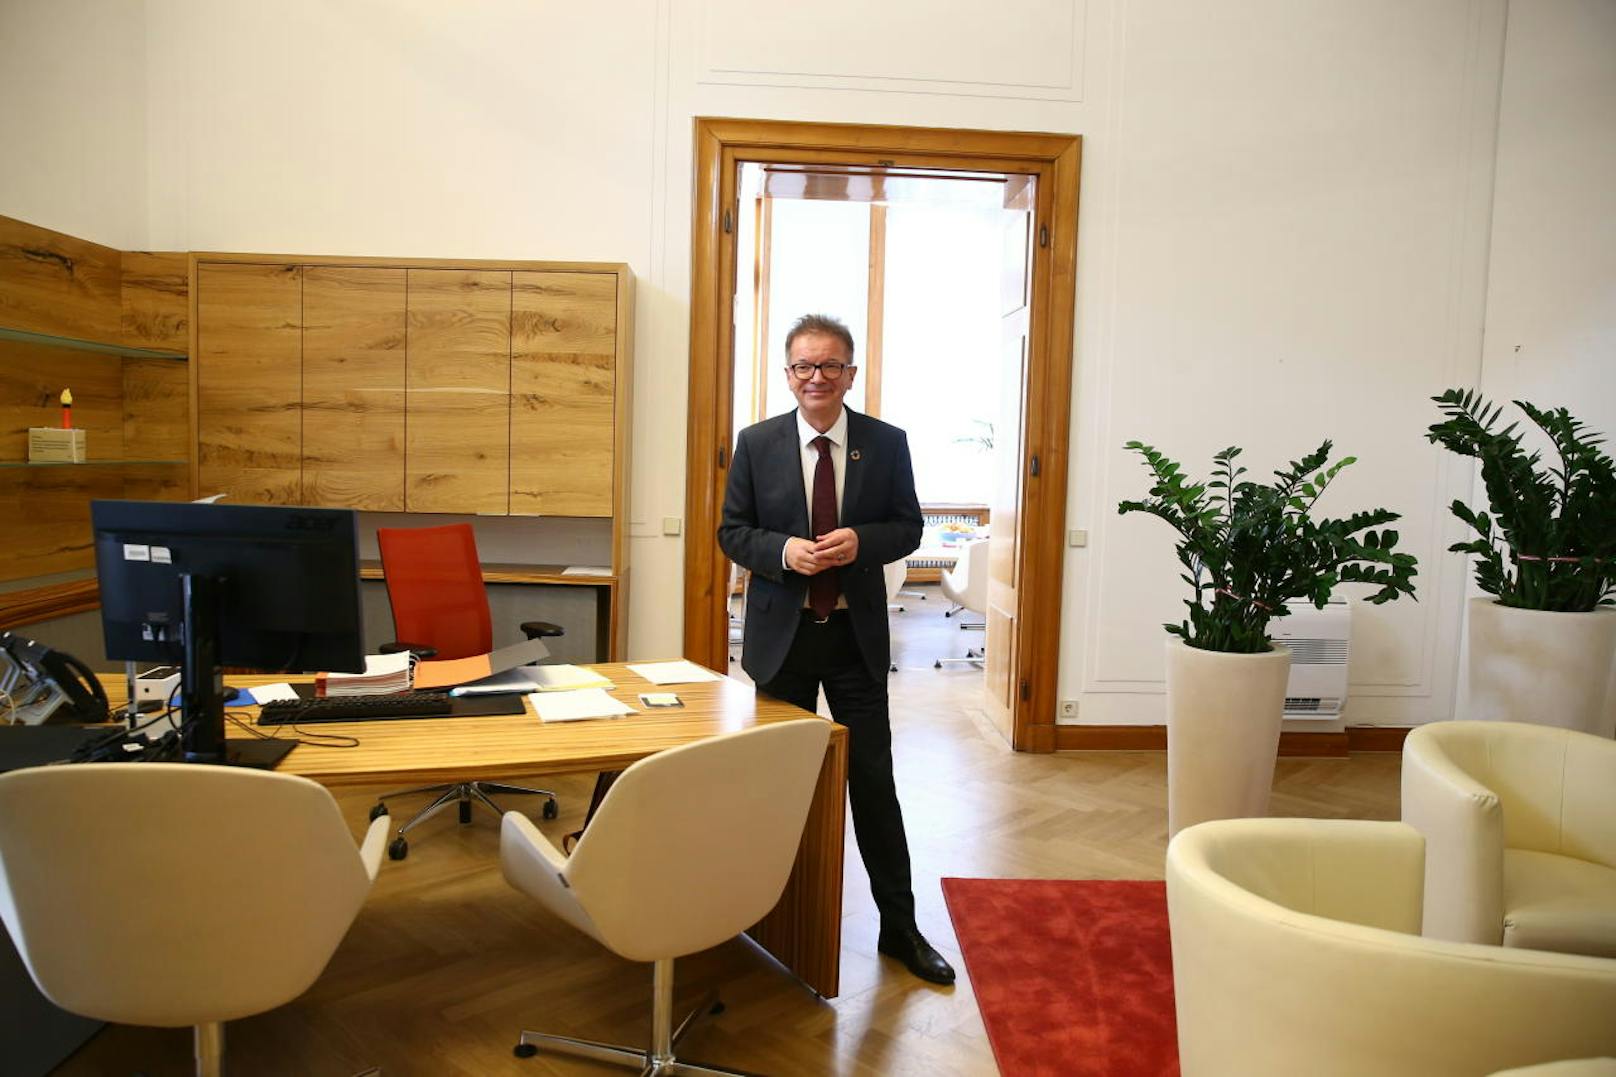 Er ist der grünste Hund Österreichs, lacht der neue Sozialminister, der also allein in seinem Büro am Wiener Ring empfängt.